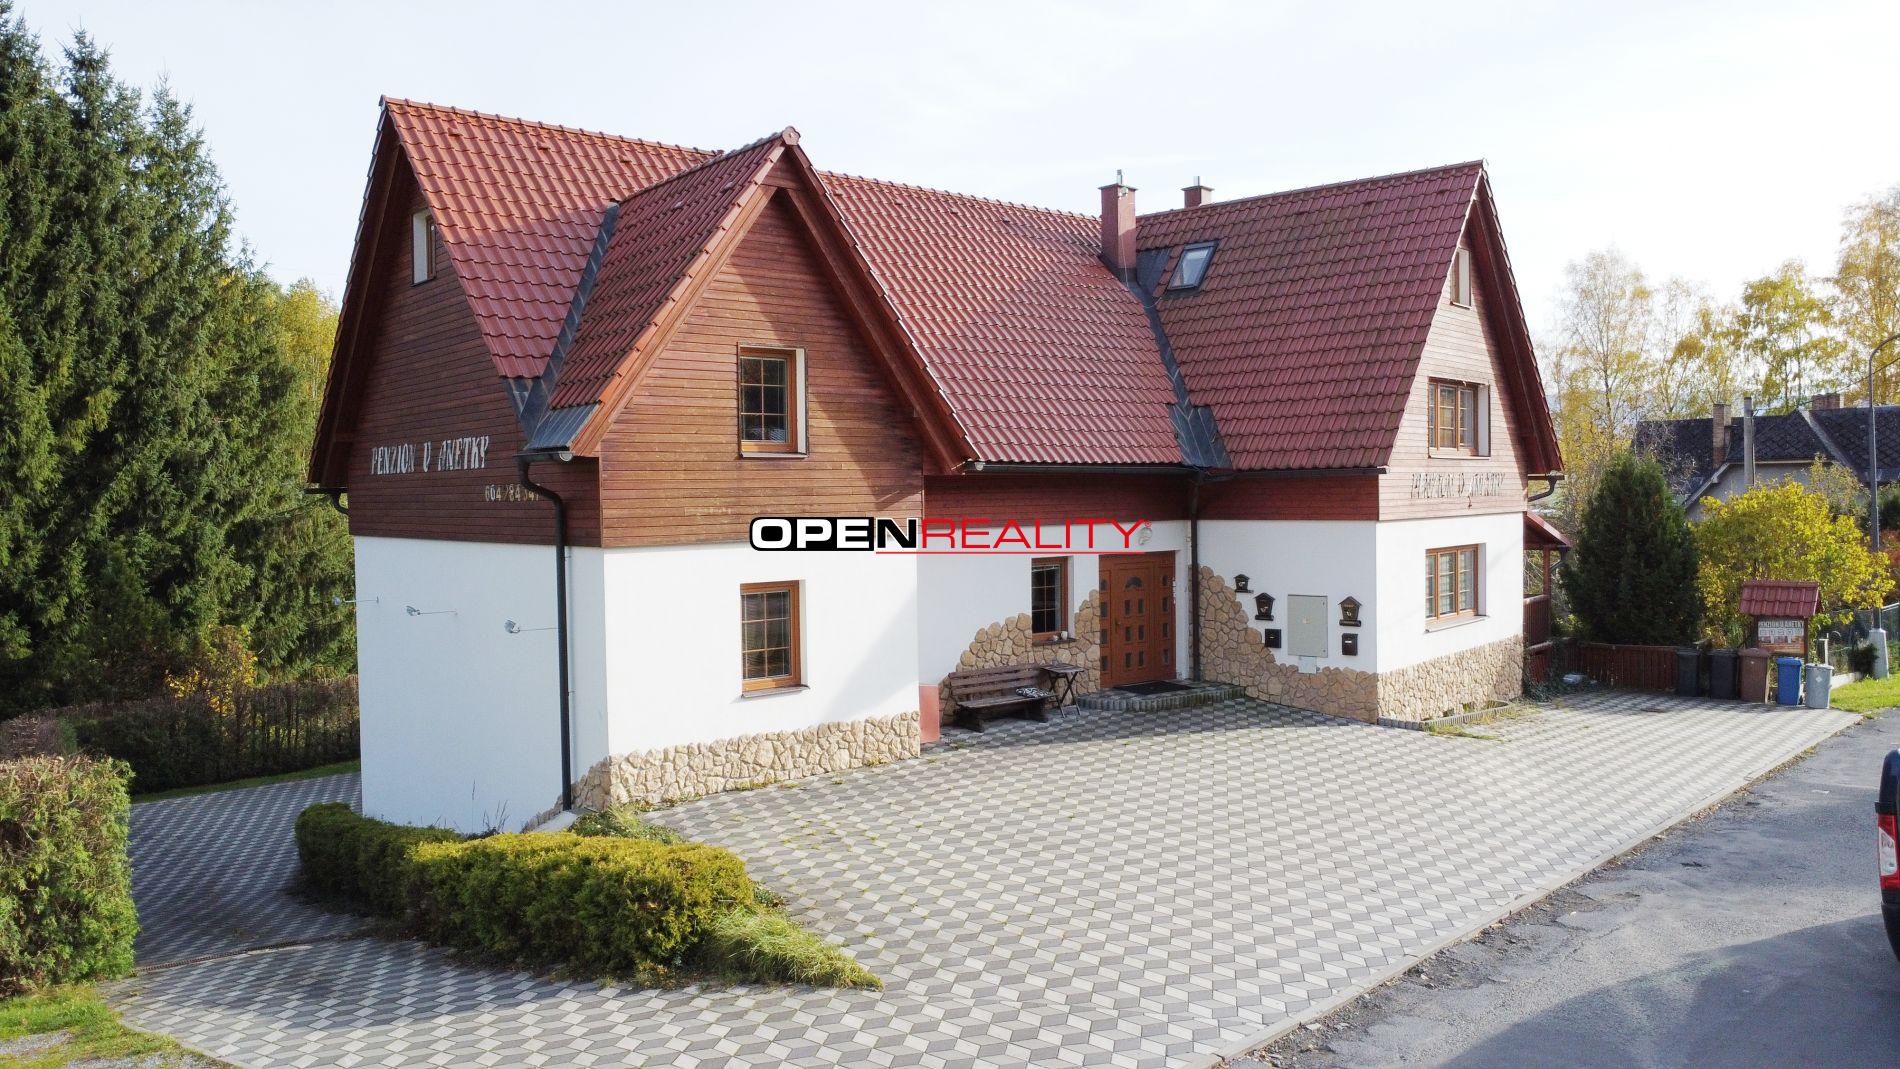 Penzion u Anetky, obec Jeseník, 9 bytů s užitnou plochou 750 m2